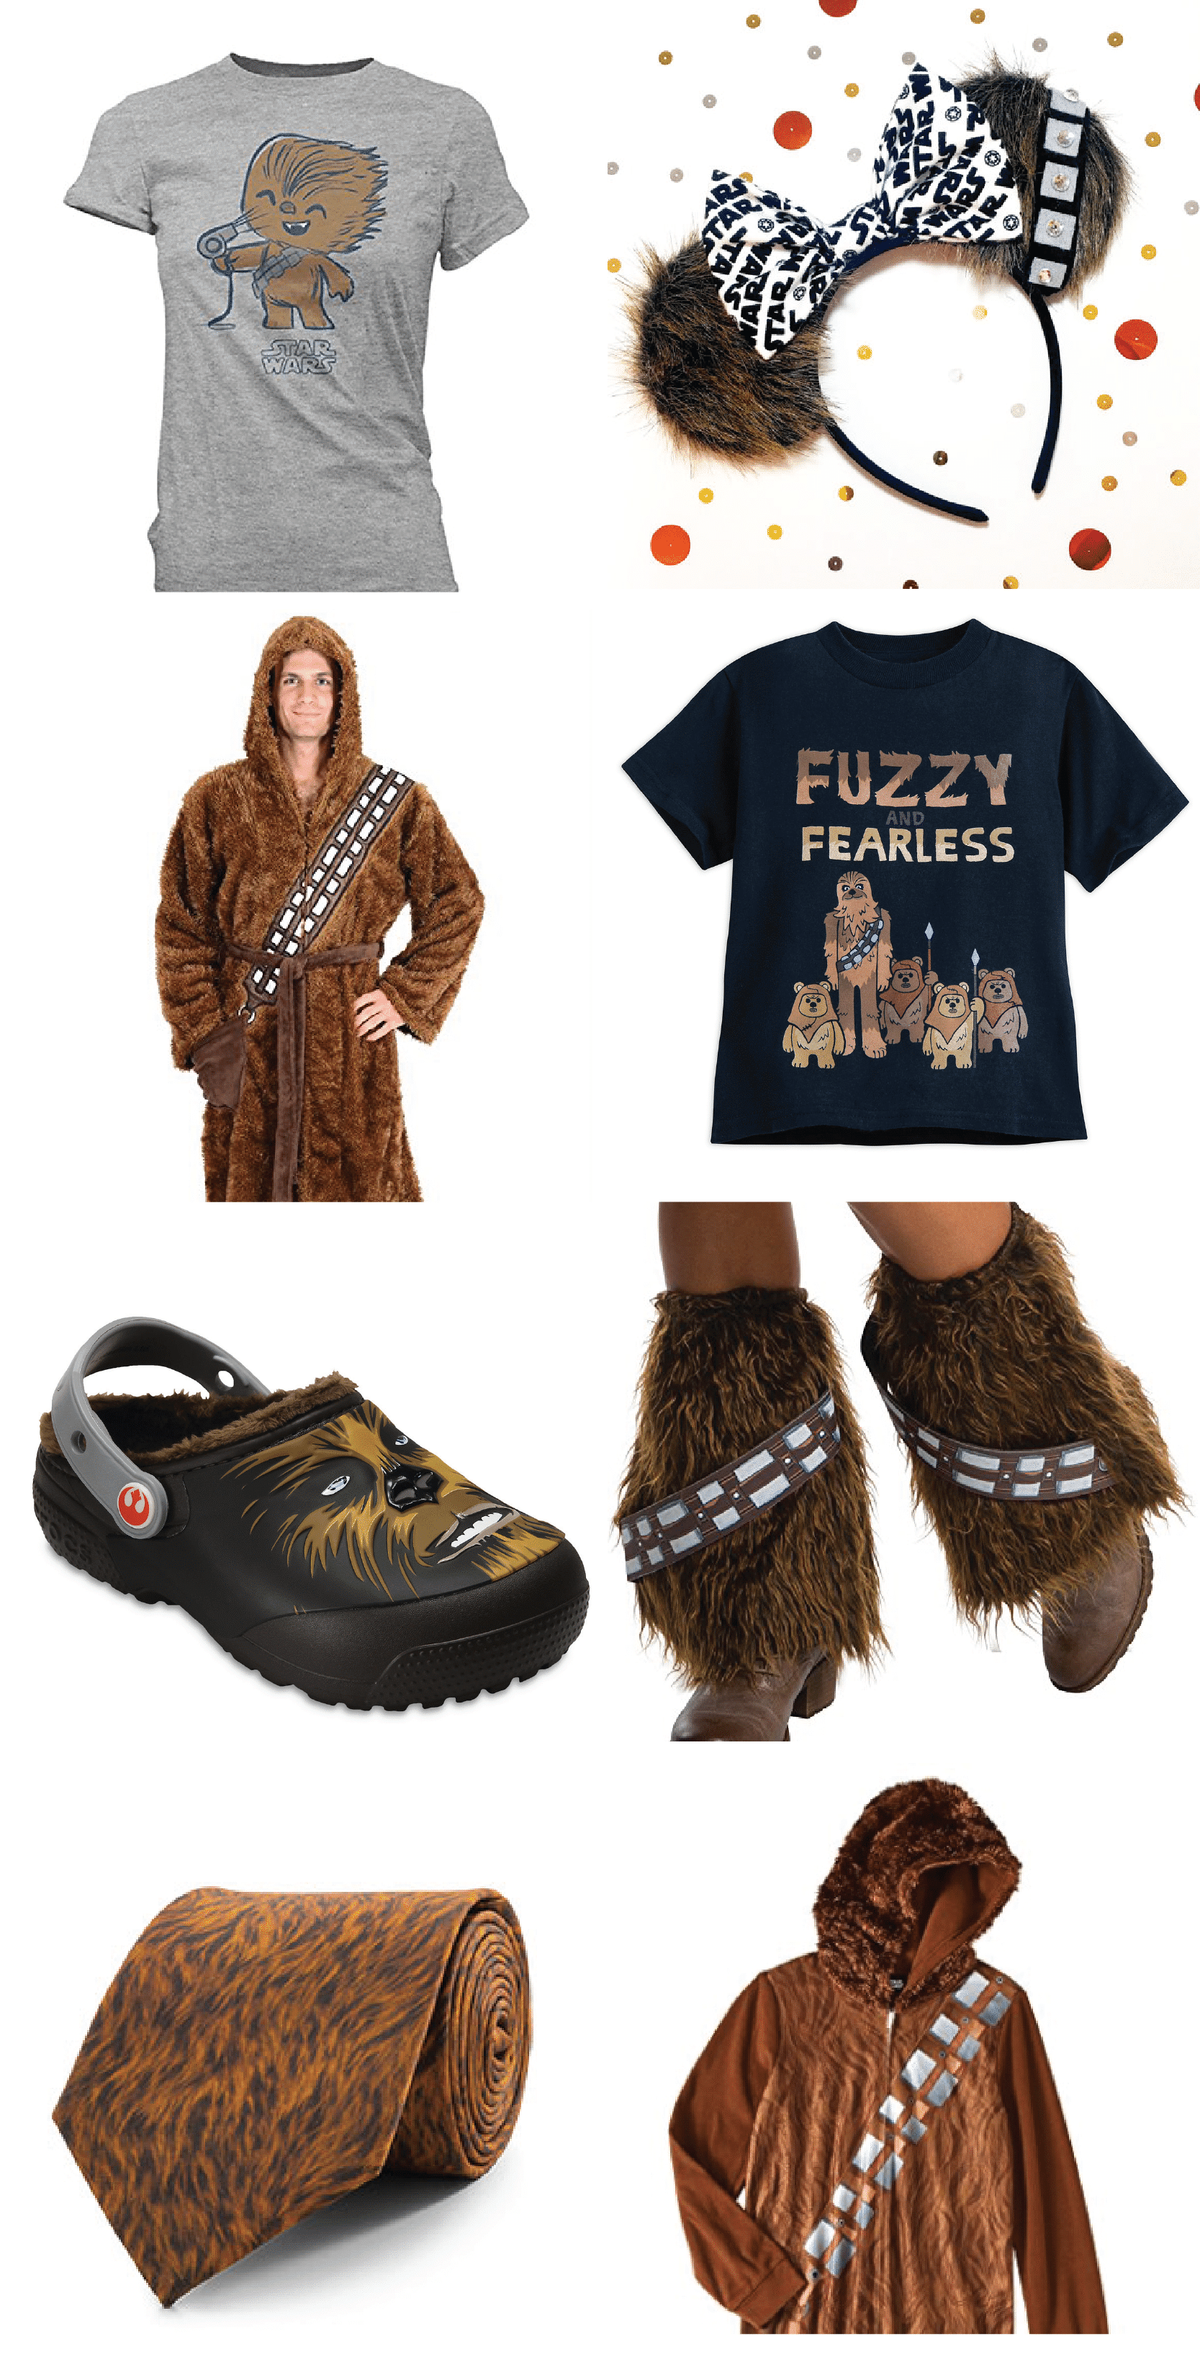 זקוקים למתנה של מלחמת הכוכבים כדי להביא למסיבה? מוצרים אלה בהשראת Chewbacca הם חלק ממתנות יום ההולדת הטובות ביותר, בגדי מלחמת הכוכבים, או באמת סתם מוצרים לאנשים שאהבו את הג